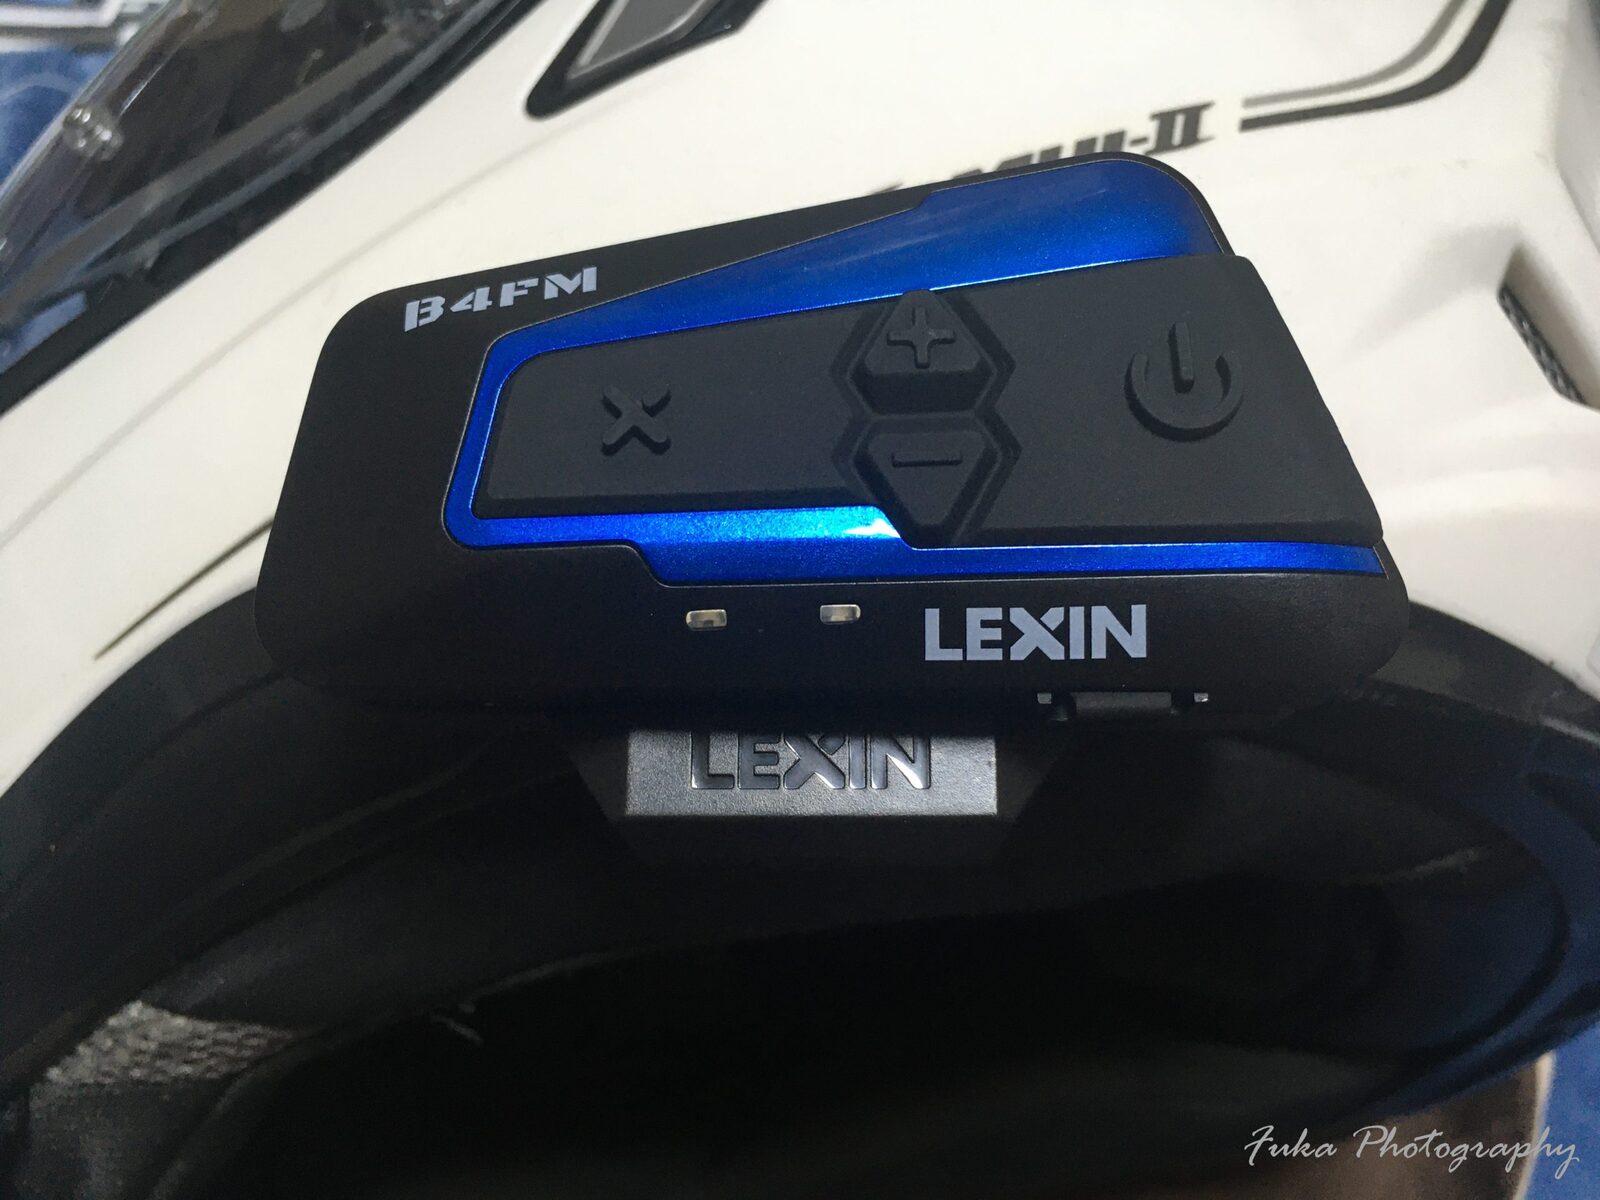 バイク インカム LEXIN 「LX-B4FM SINGLE PACK」 を購入してみました - 無題ドキュメント